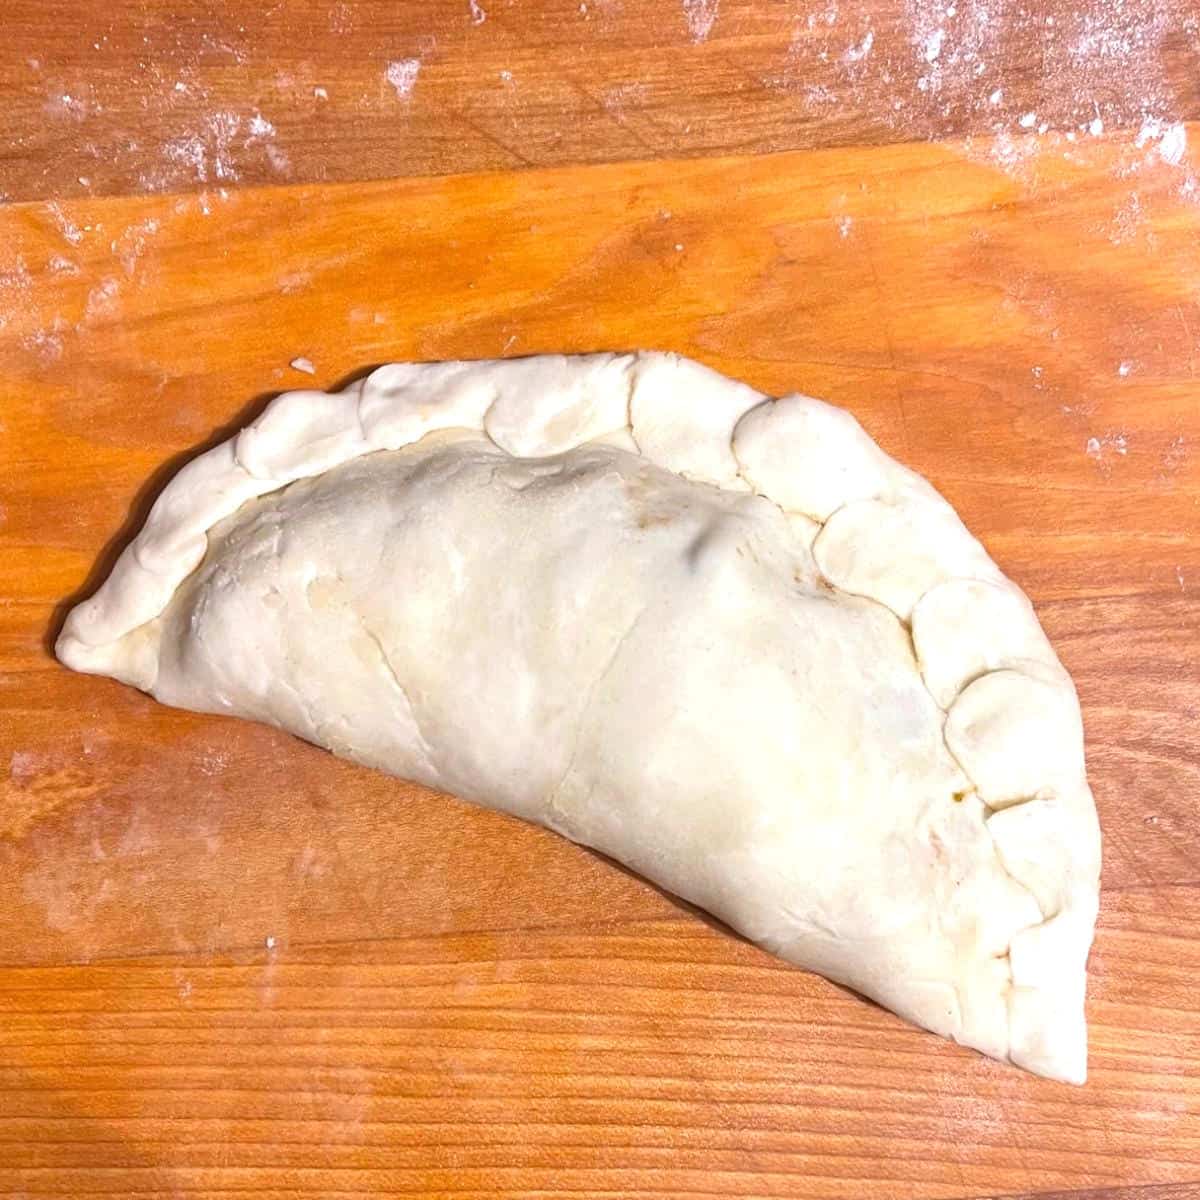 Shaped vegan empanada with crimped edges.